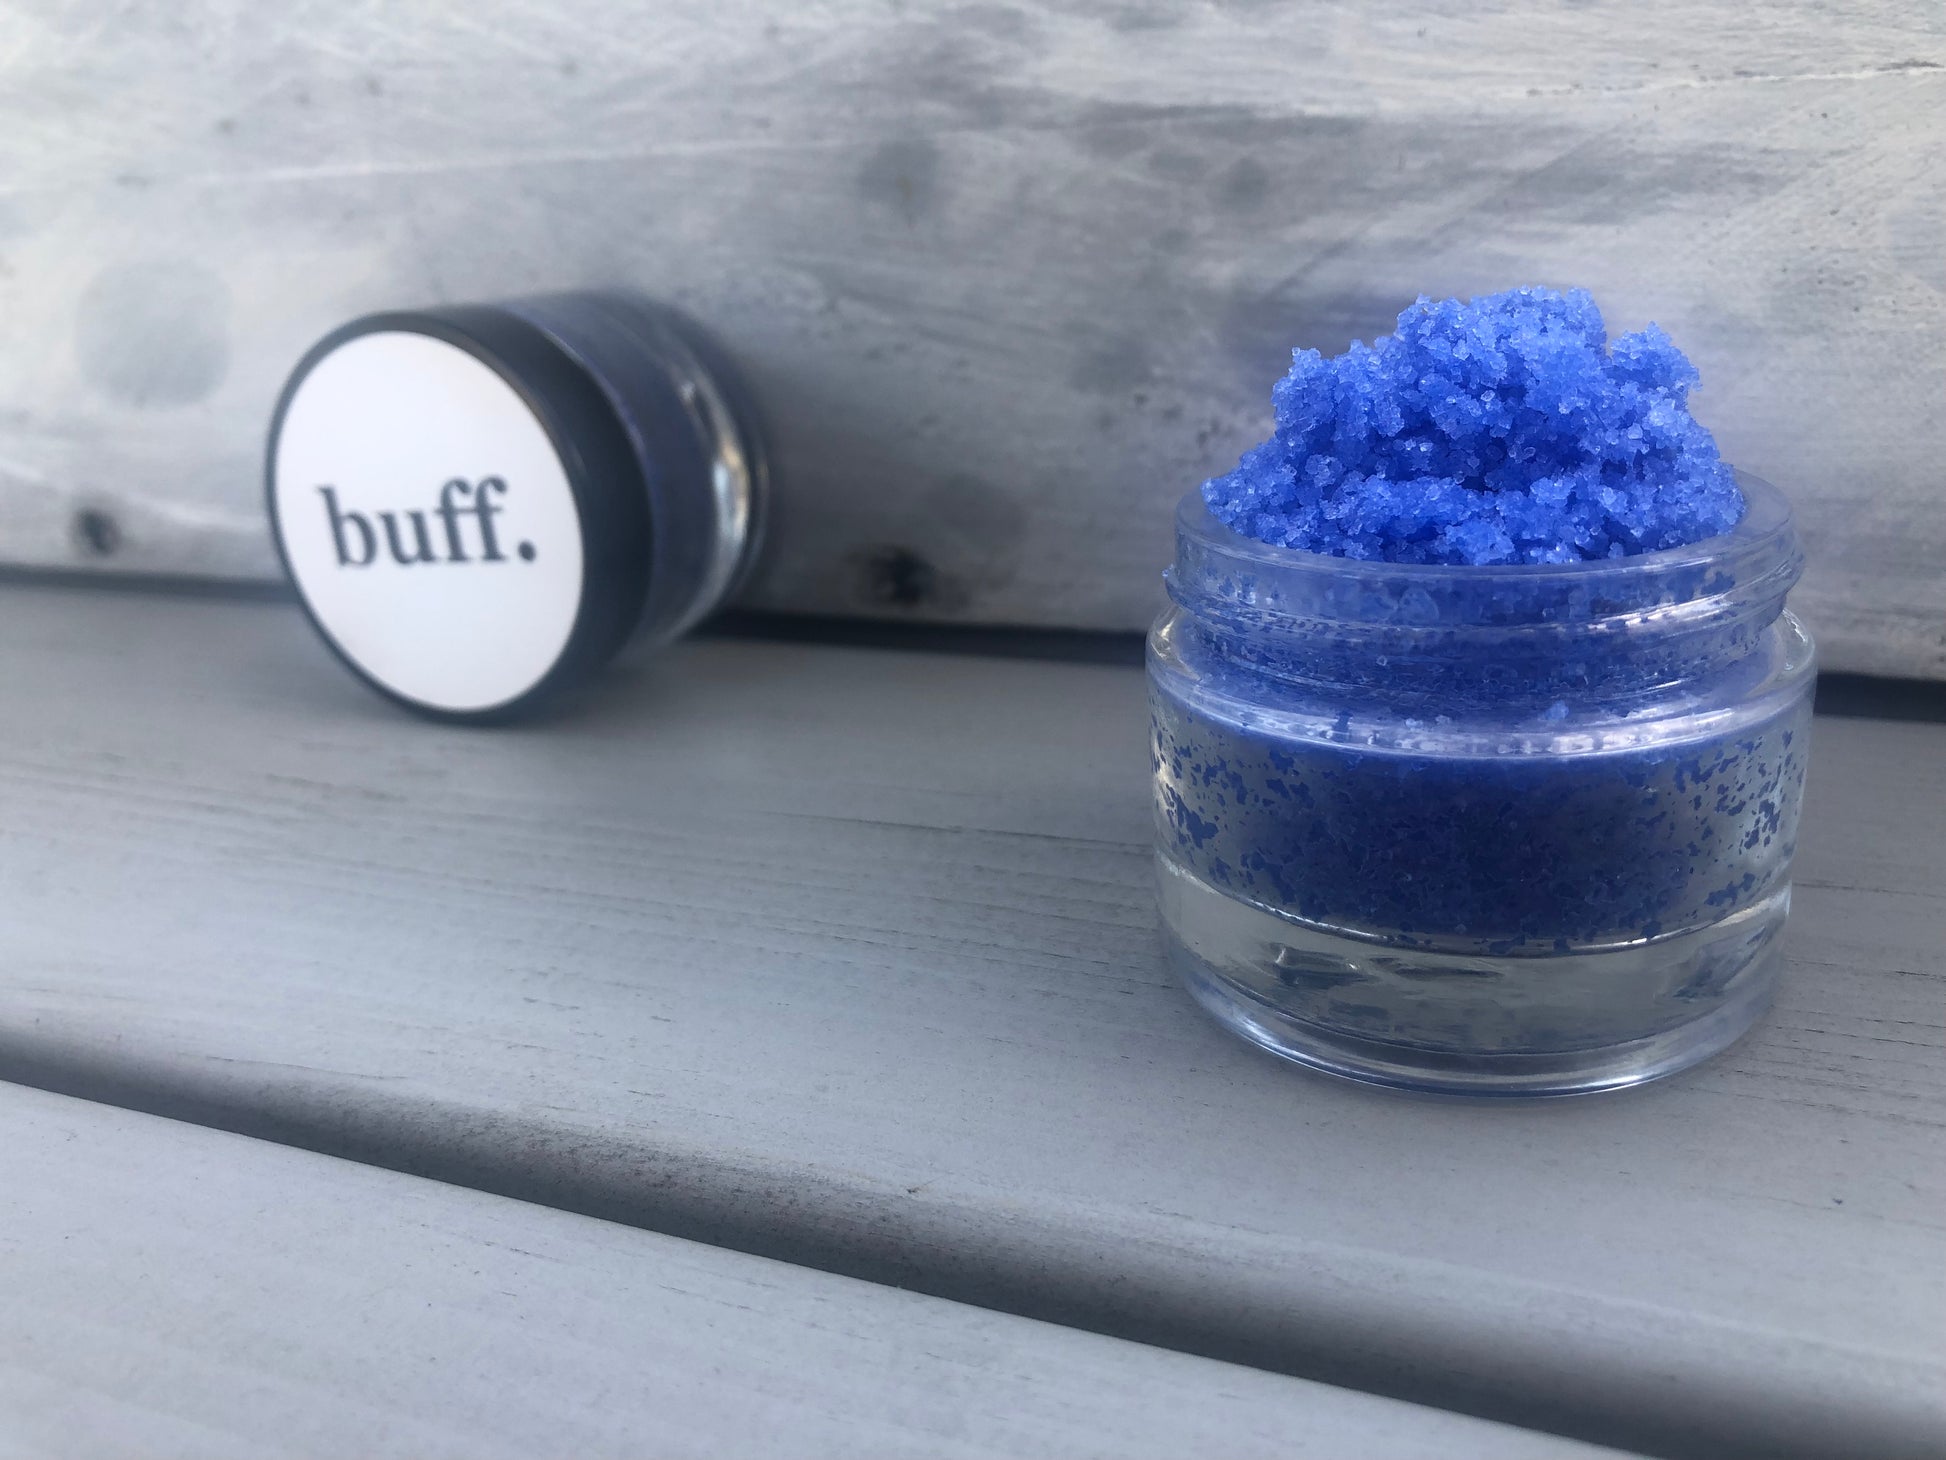 Blue bubblegum sugar lip scrub used for exfoliating in a glass jar